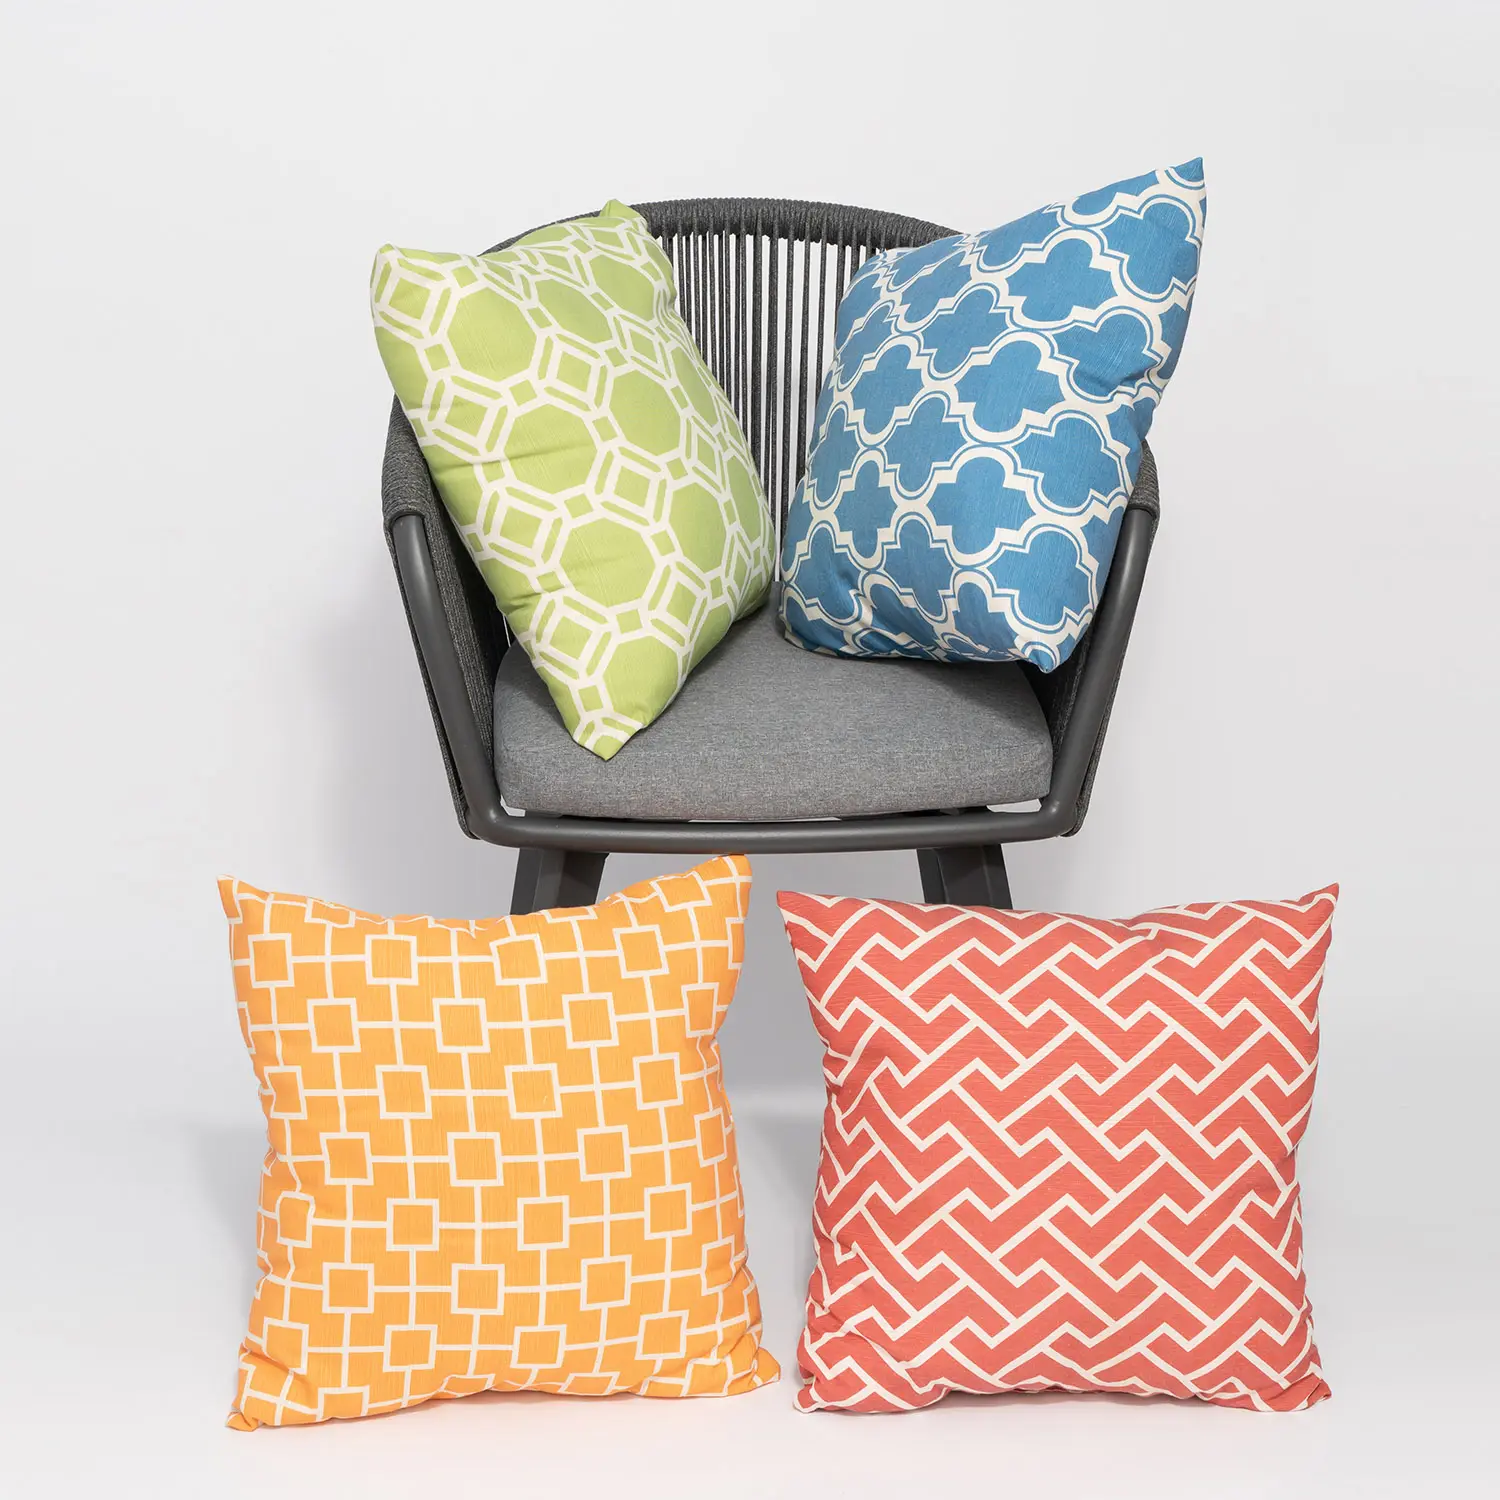 Polyester pamuk Modern çeşitli renkler tasarımlar atmak yastık kanepe bel yastığı minder örtüsü ürünleri